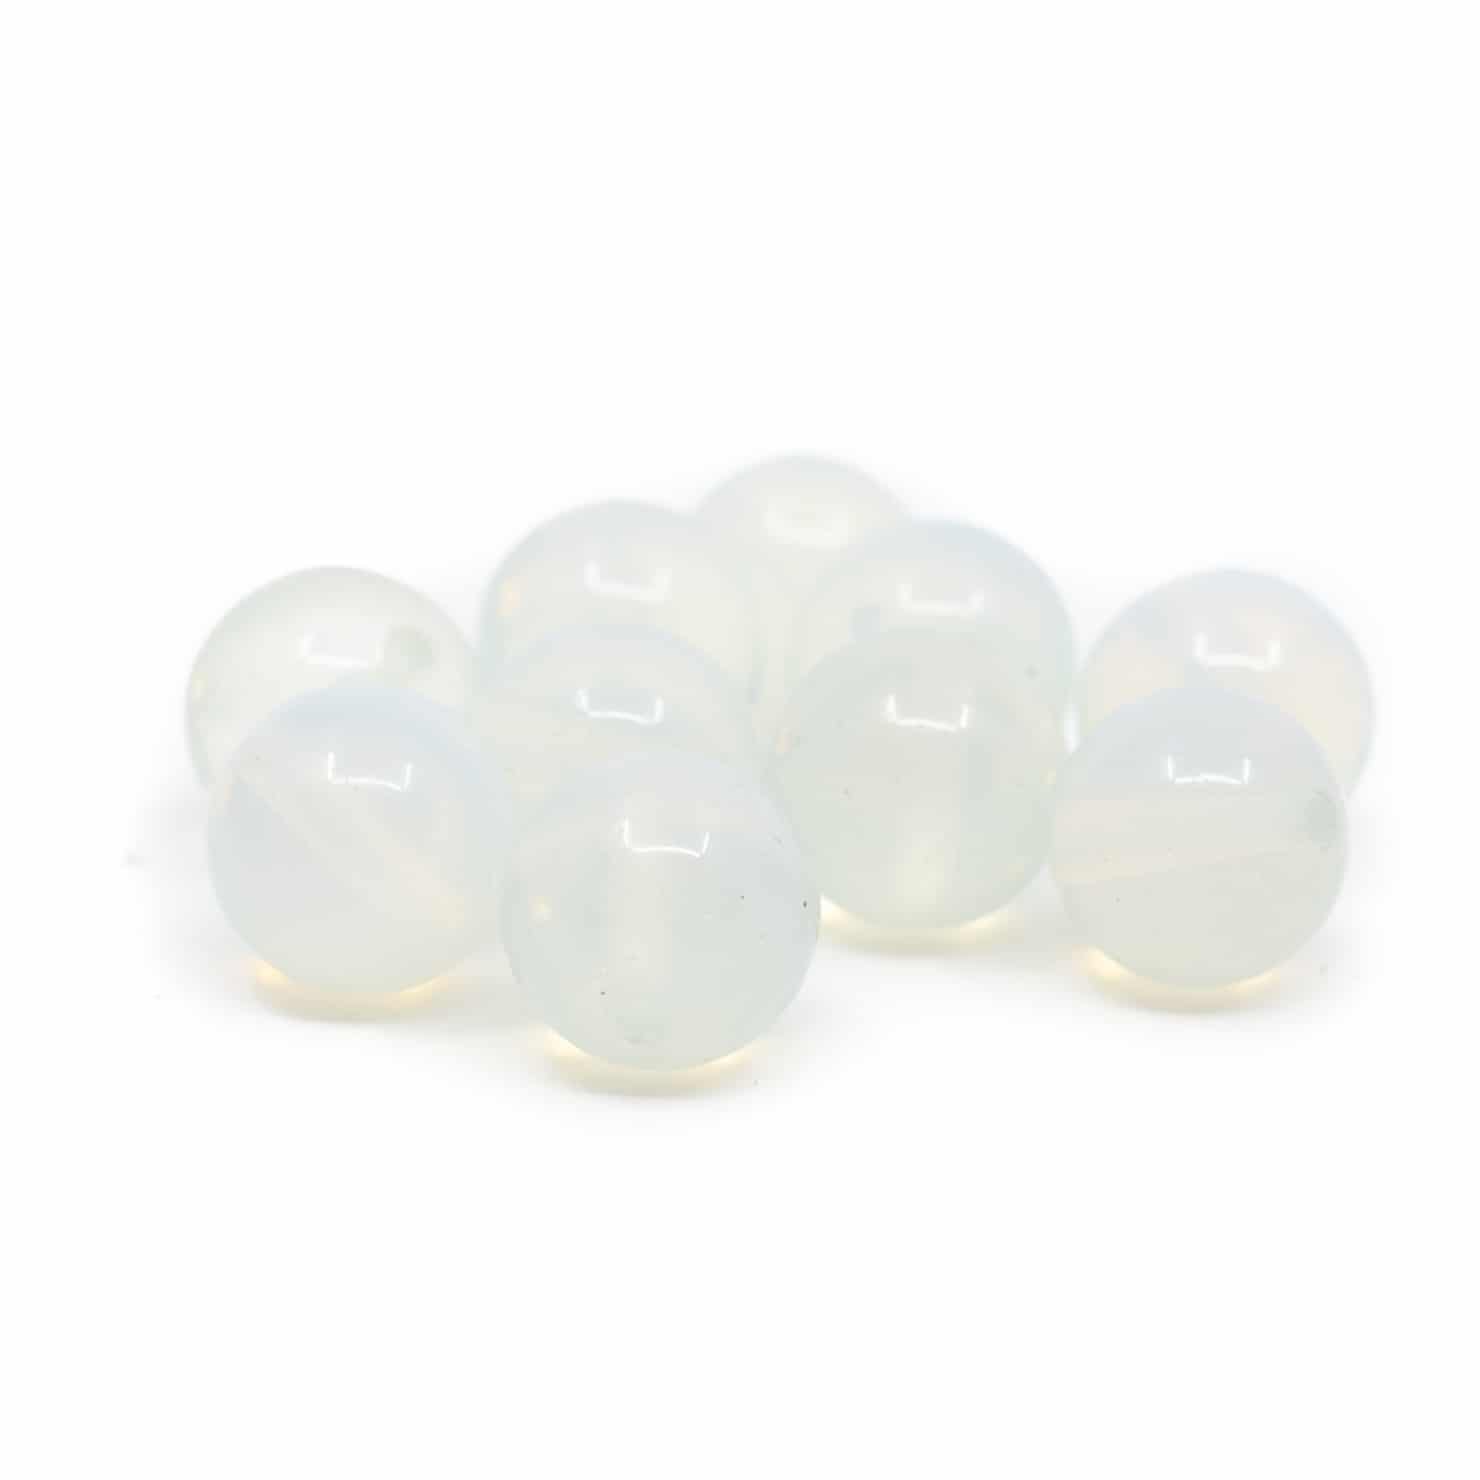 Edelstein Lose Perlen Opalit - 10 St-ck (10 mm)